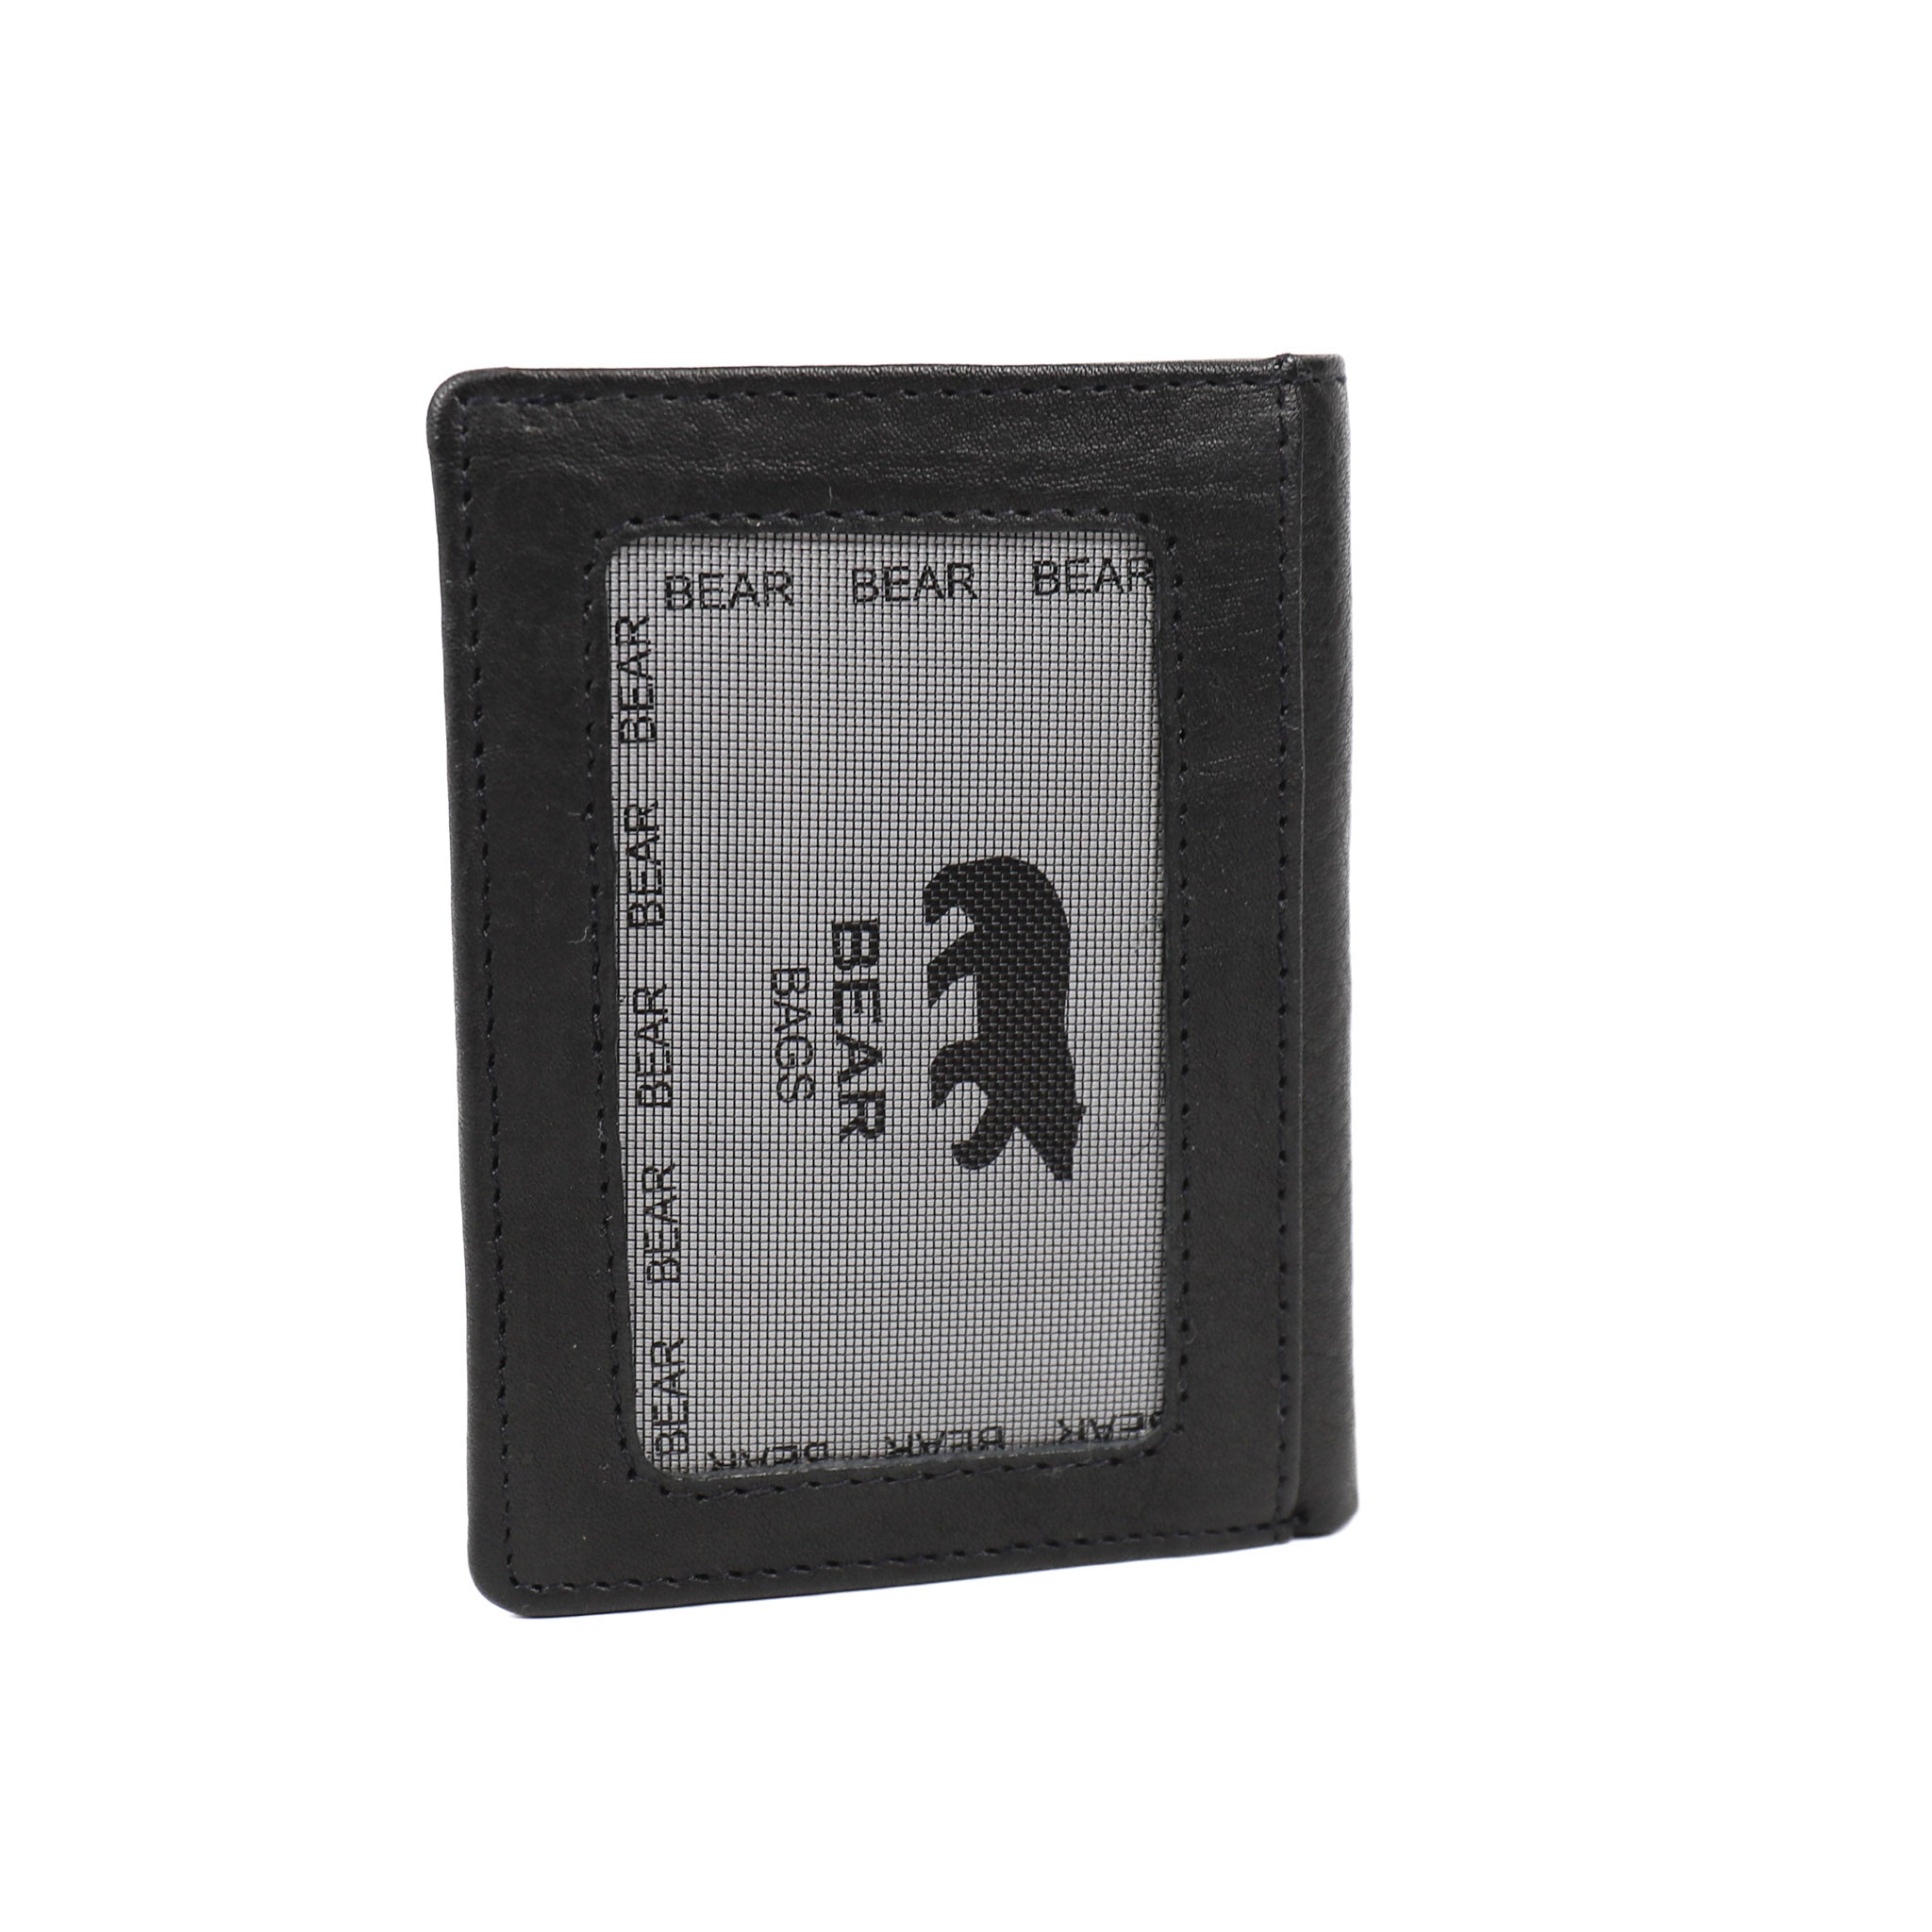 Card holder 'Cas' black